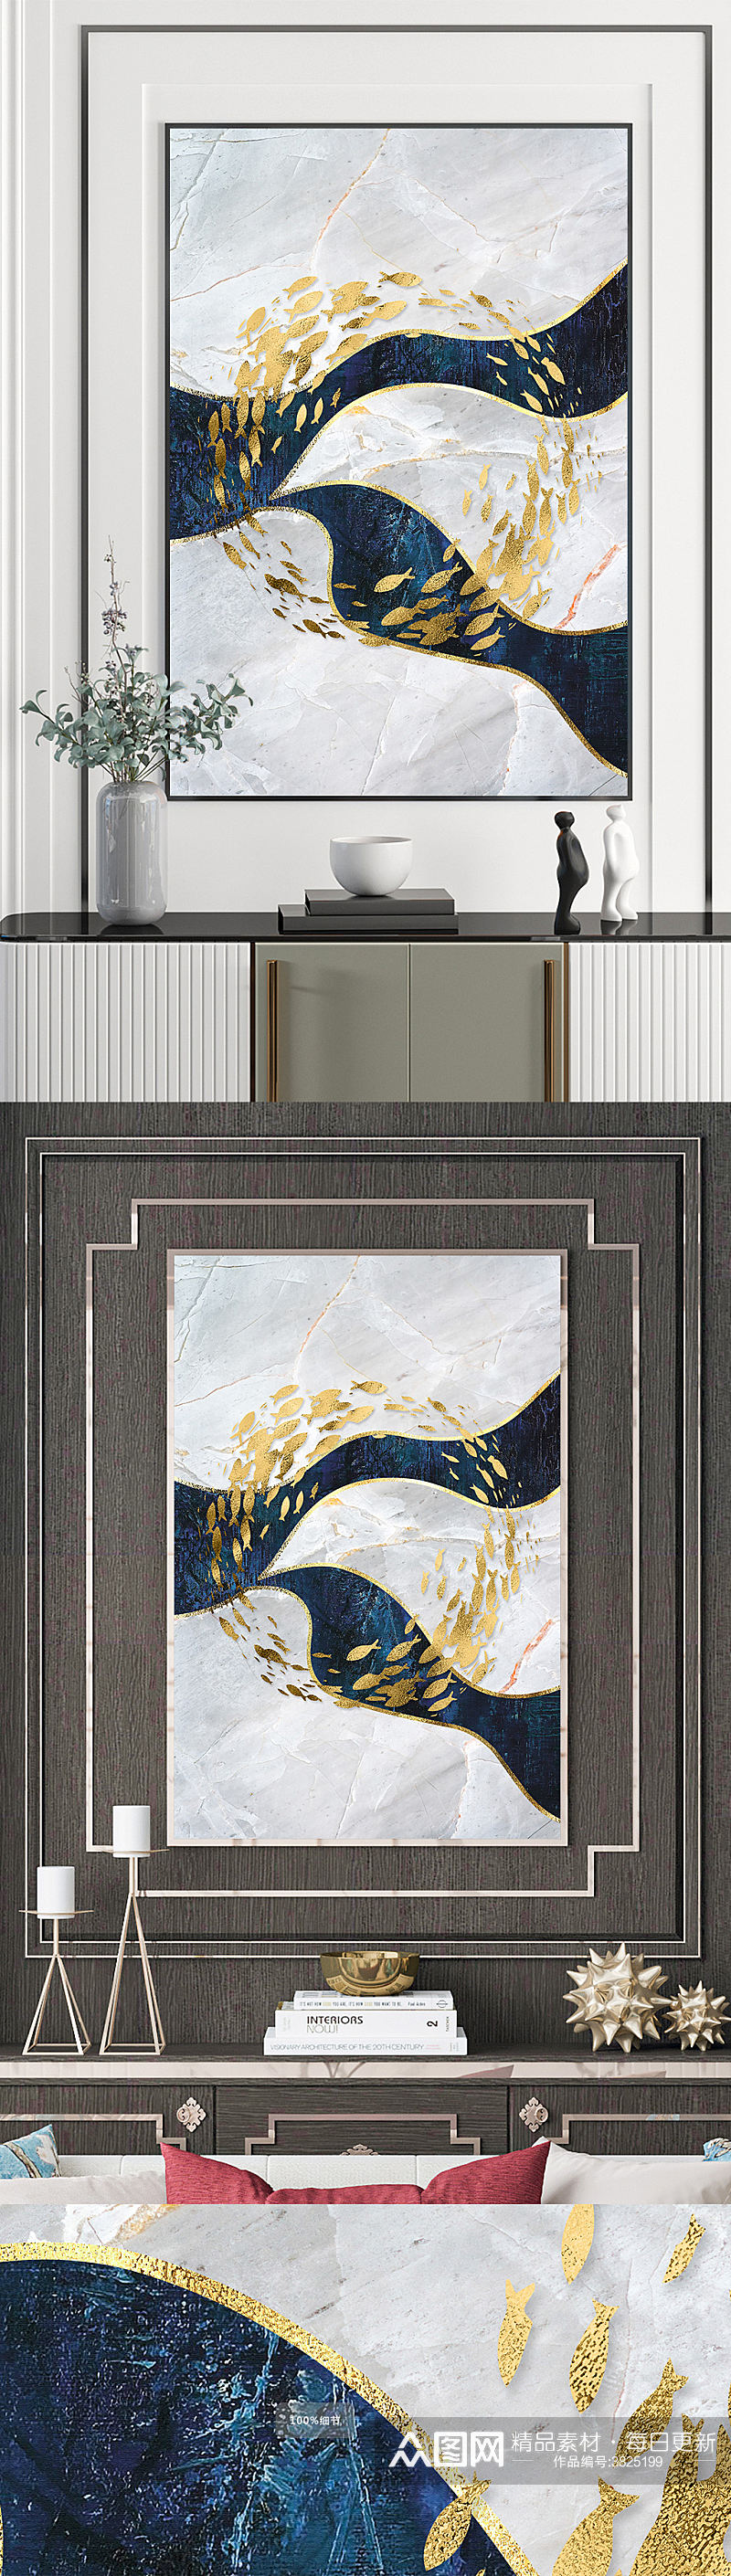 大理石抽象金箔游鱼油画装饰画素材